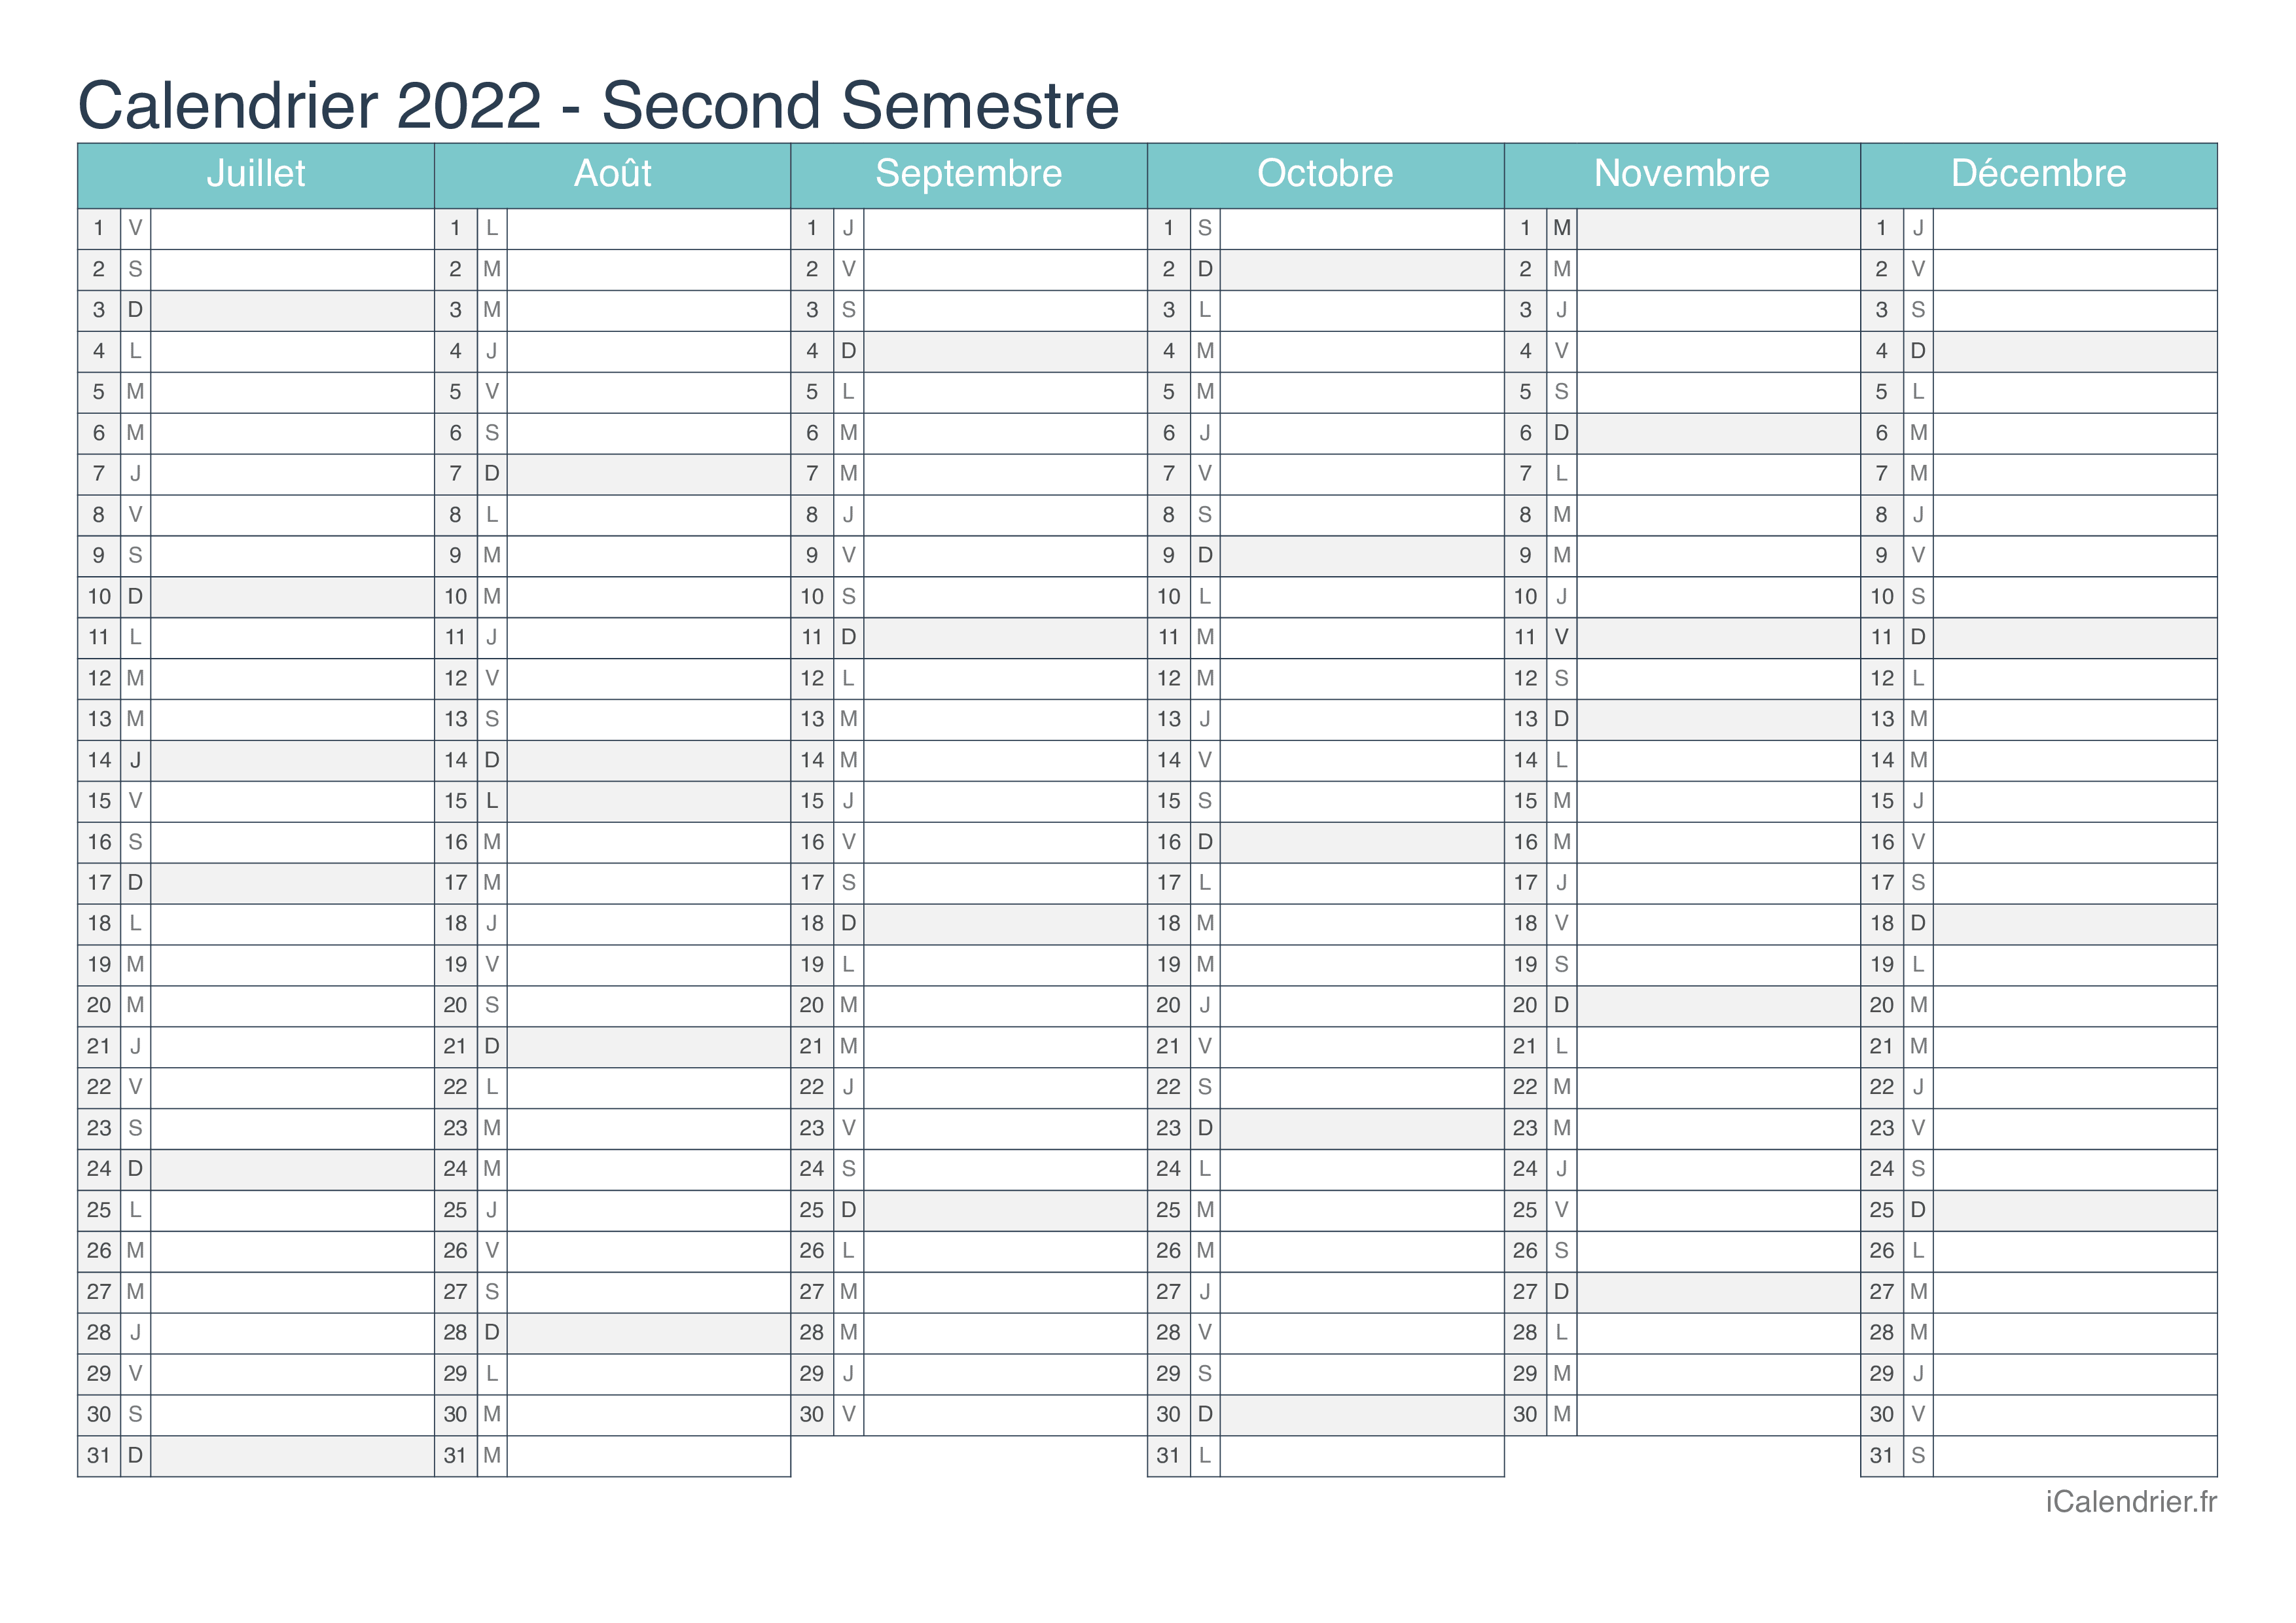 Calendrier 2022 Par Semestre Calendrier 2022 à imprimer PDF et Excel   iCalendrier